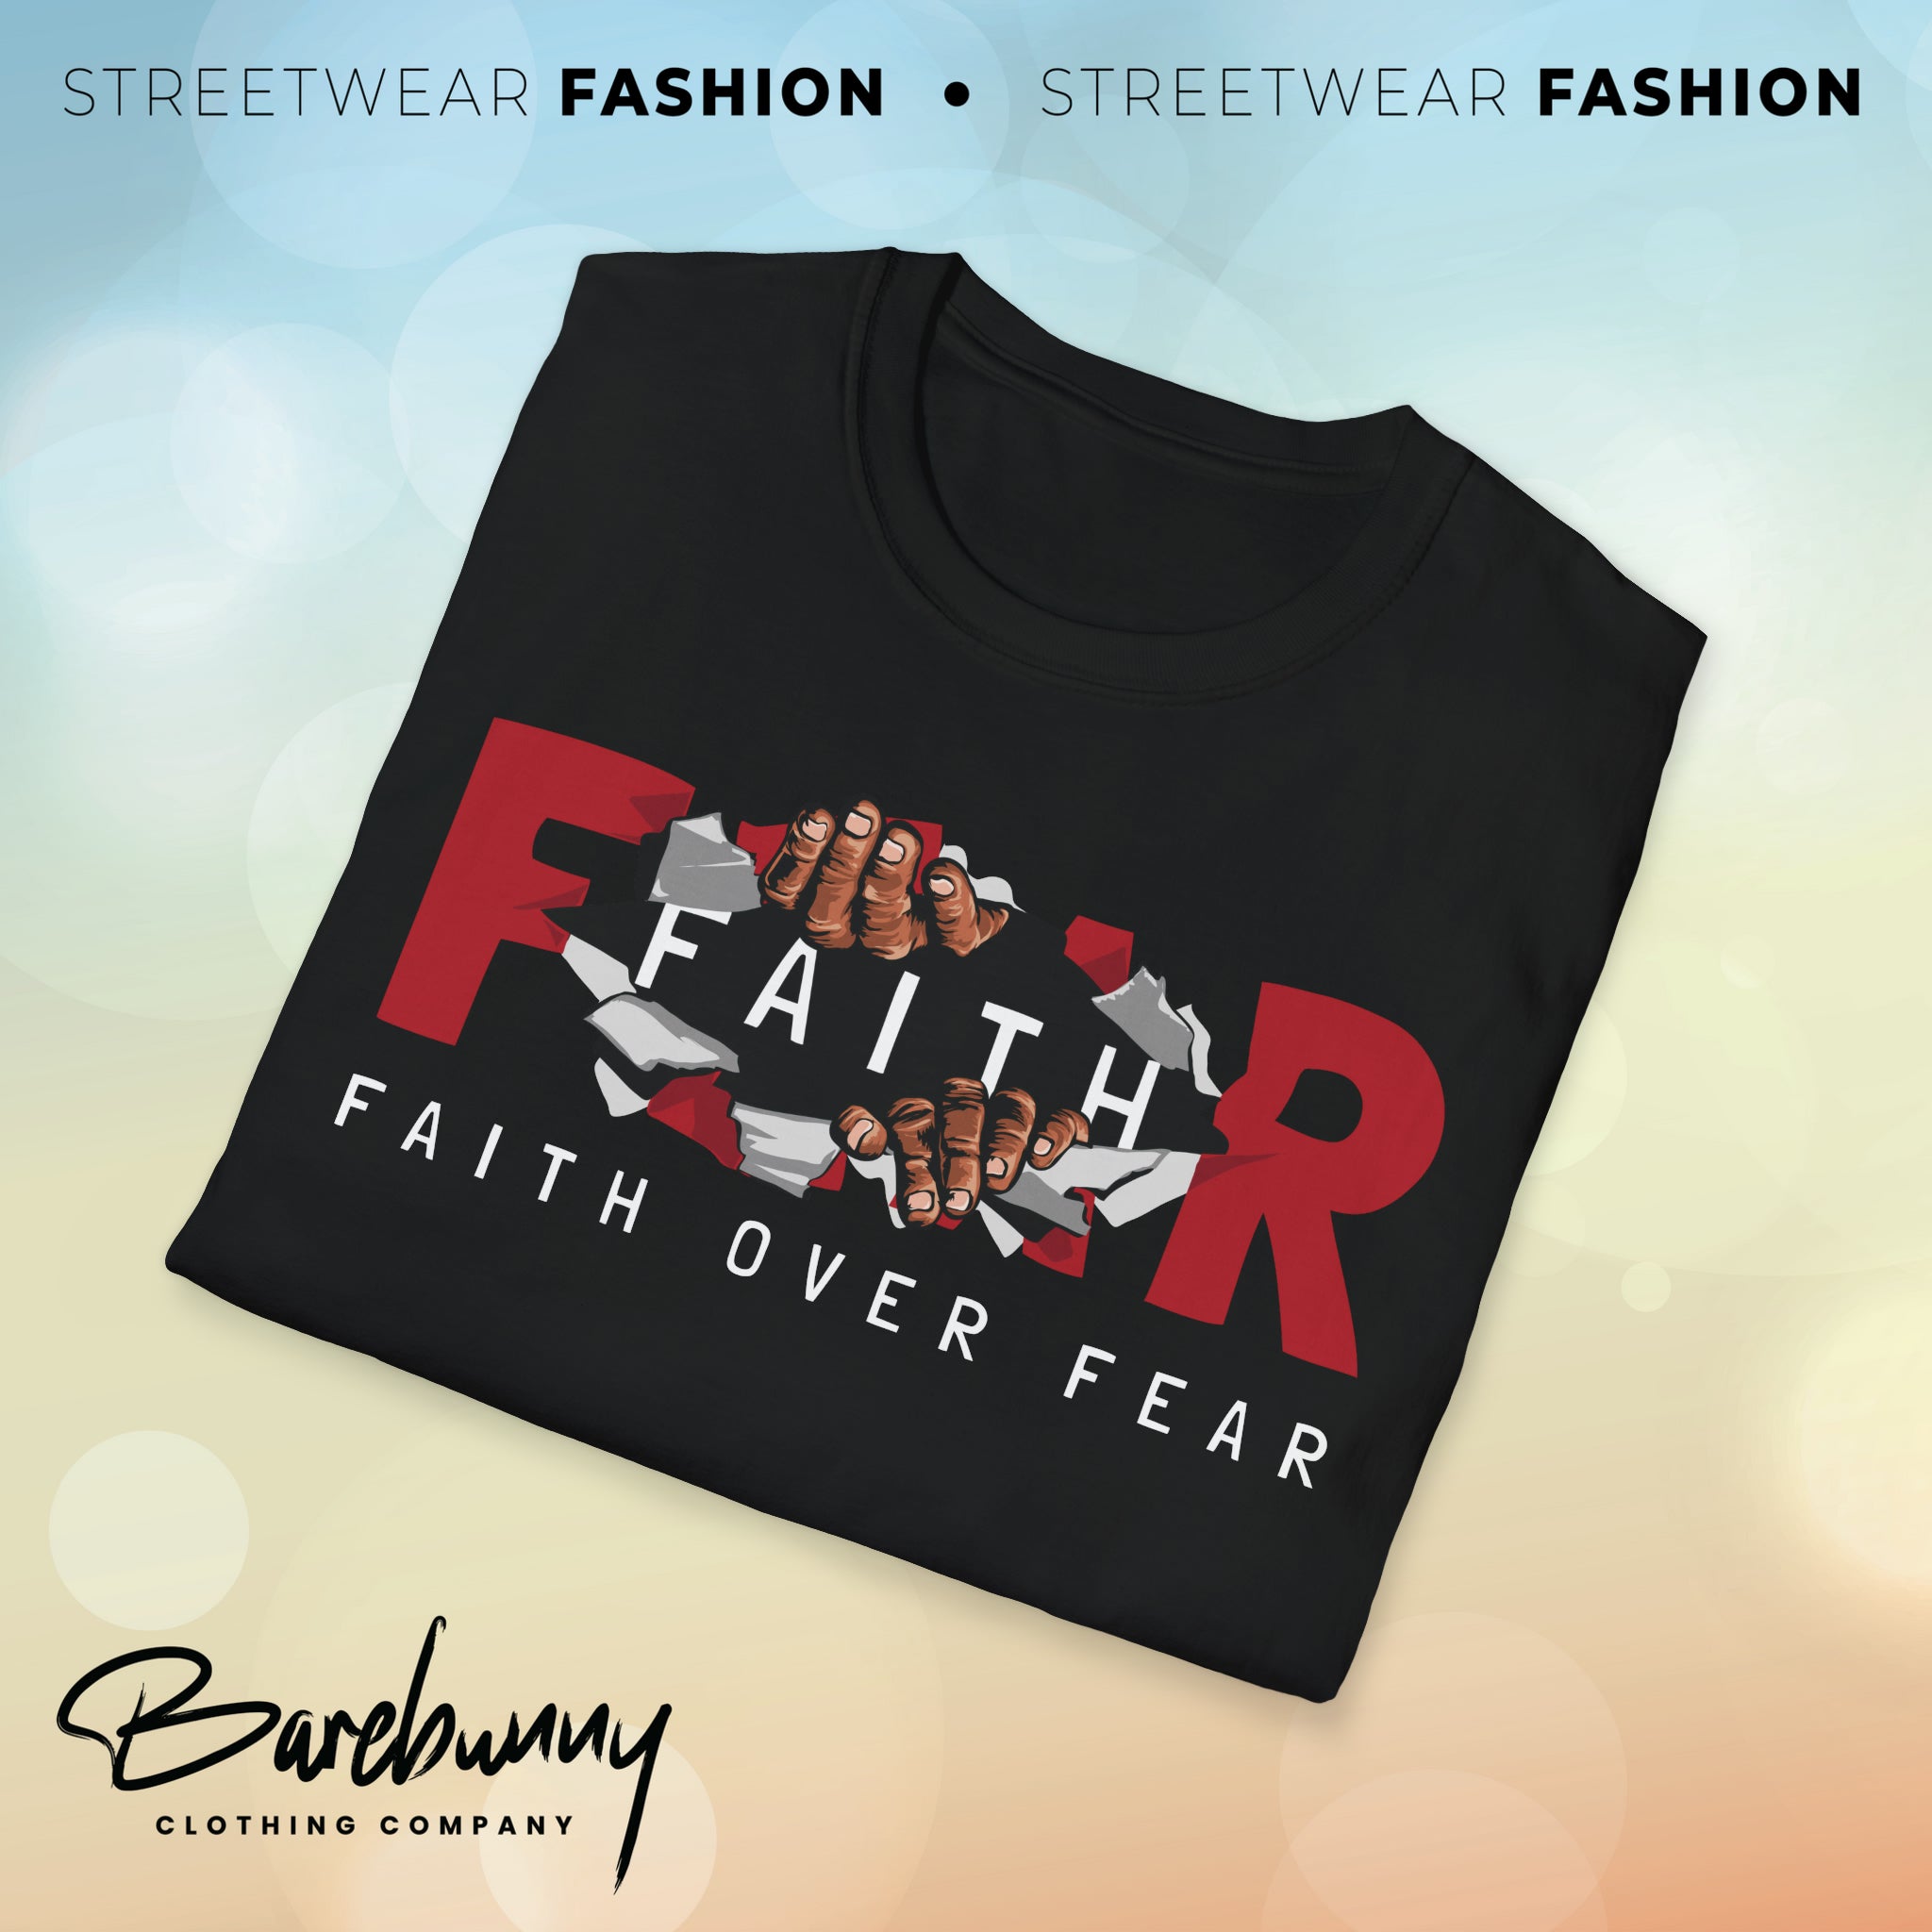 Faith over Fear - Unisex Softstyle T-Shirt (DTF)